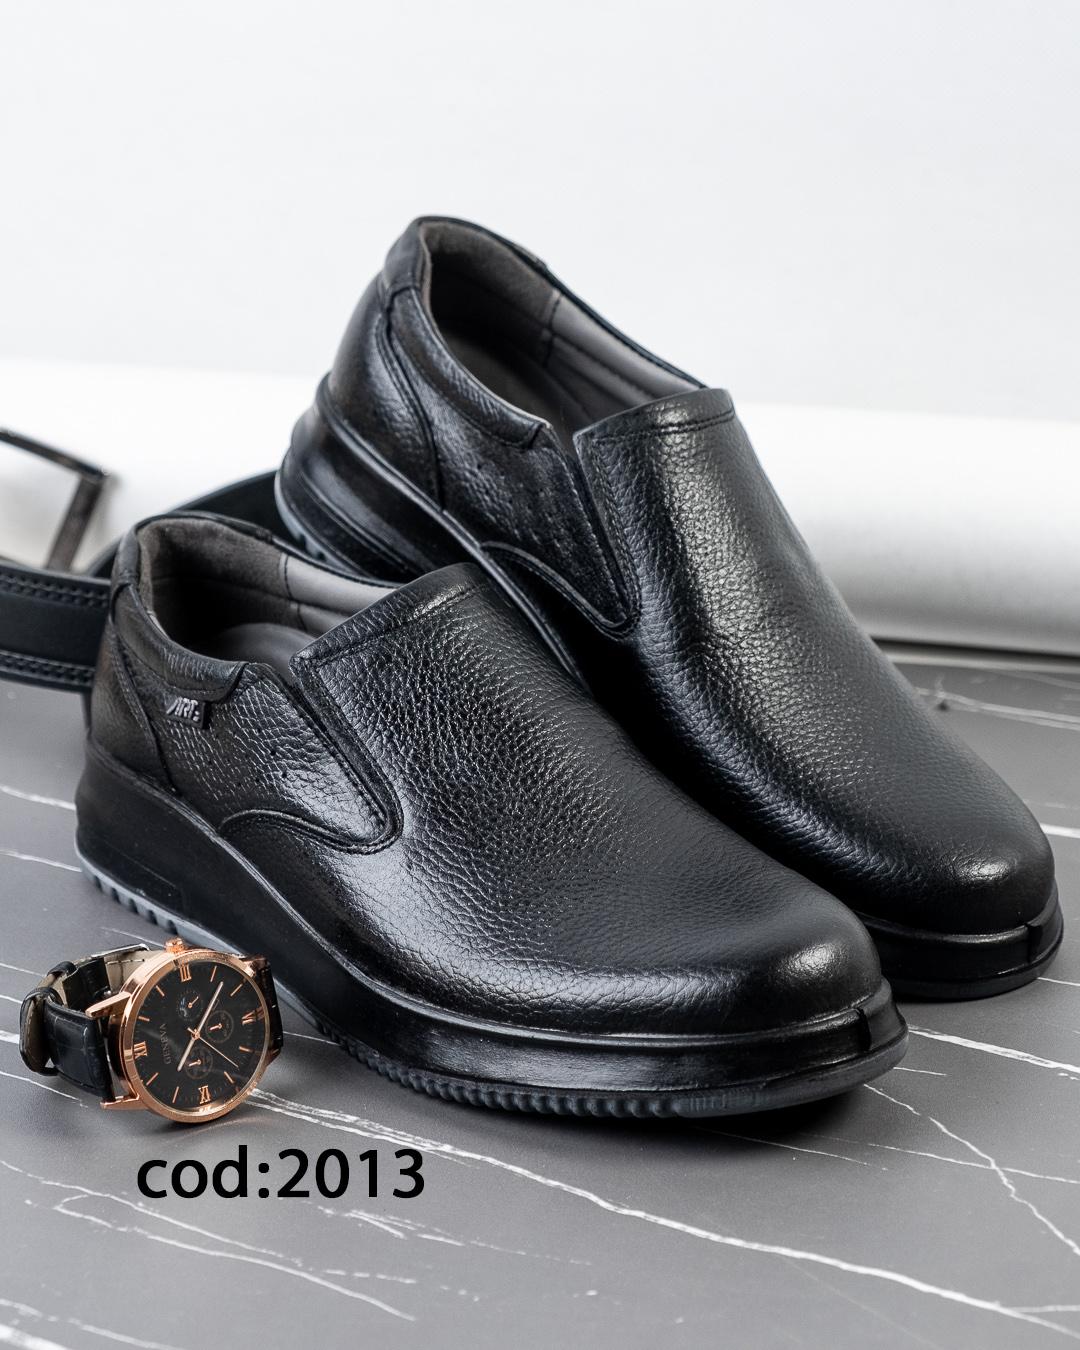  کفش بدون بند تمام مشکی ART 2013 